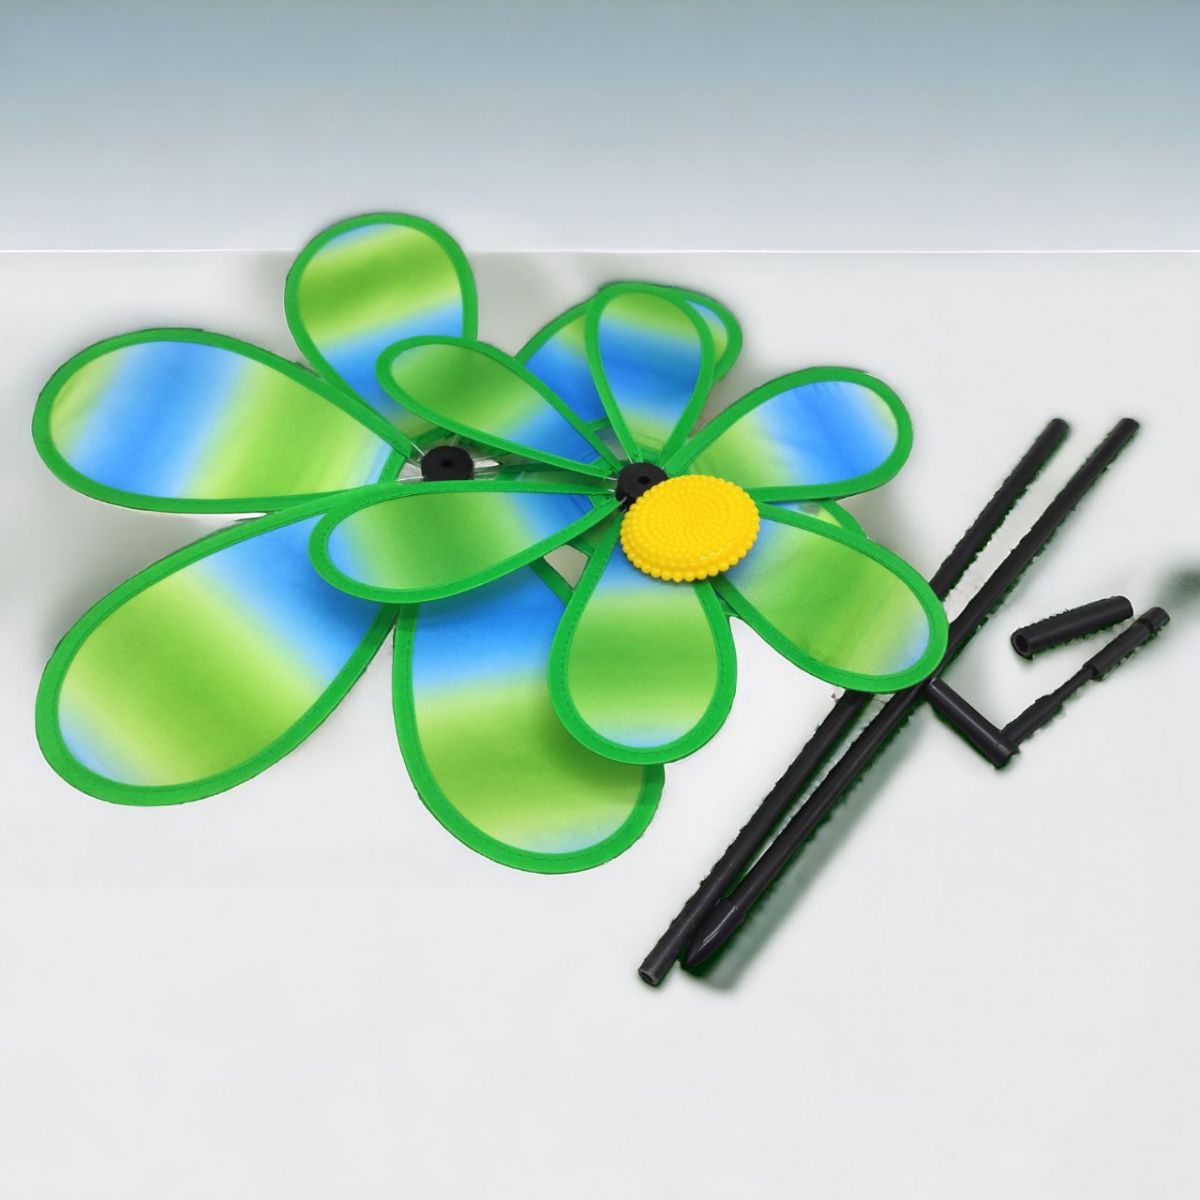 Вітрячок "Квіточка", діаметр 38 см, зелений